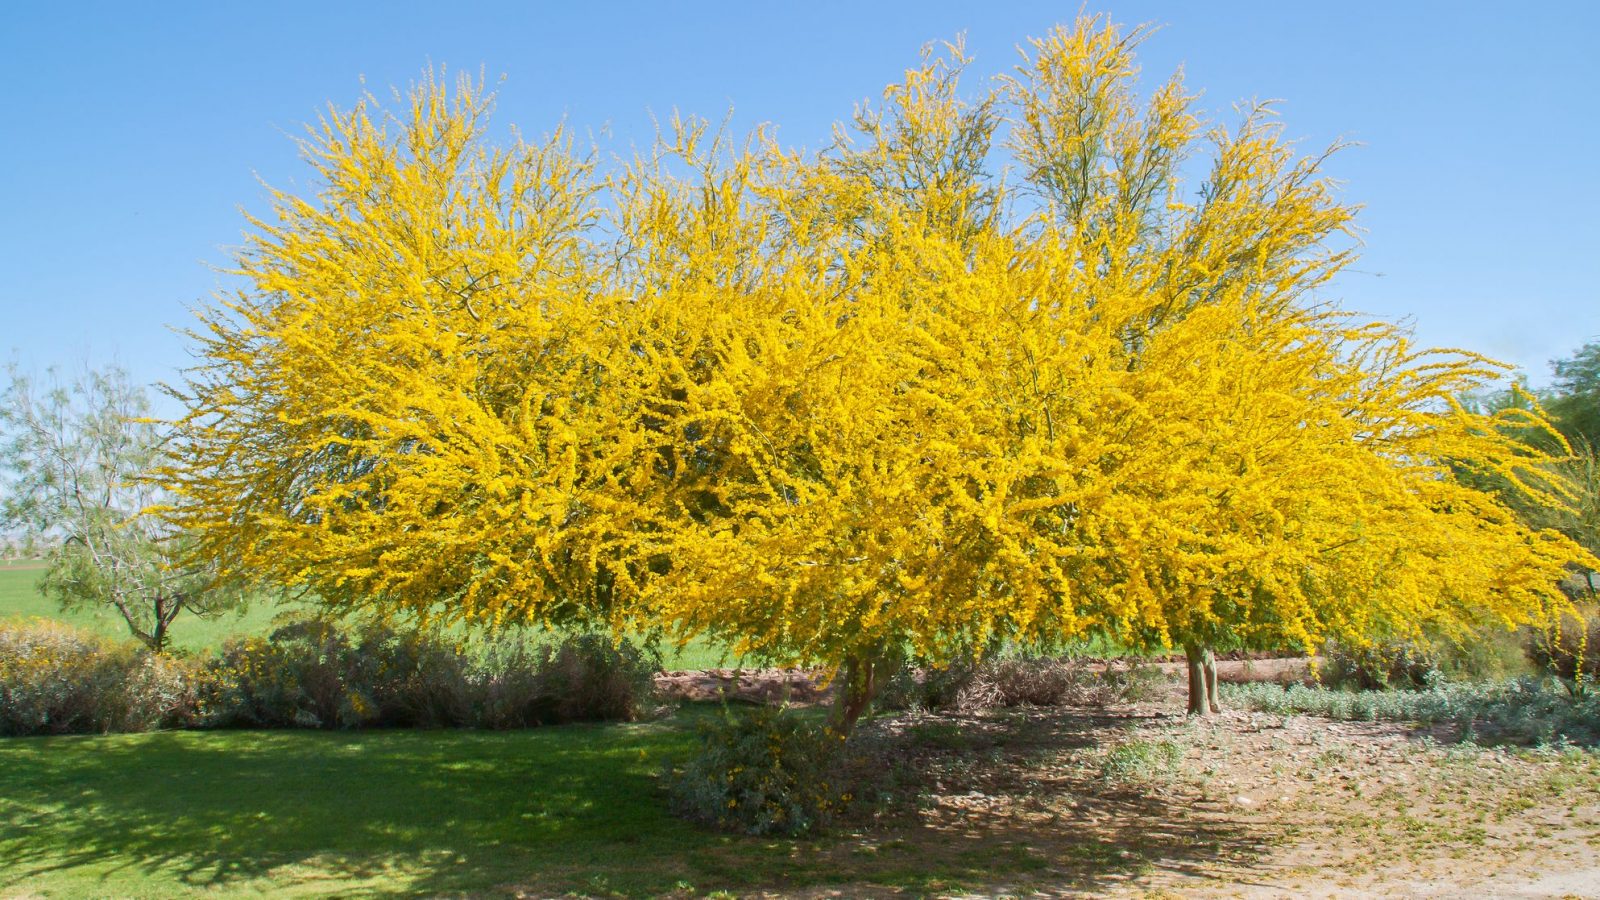 Palo Verde Tree in Spring Bloom